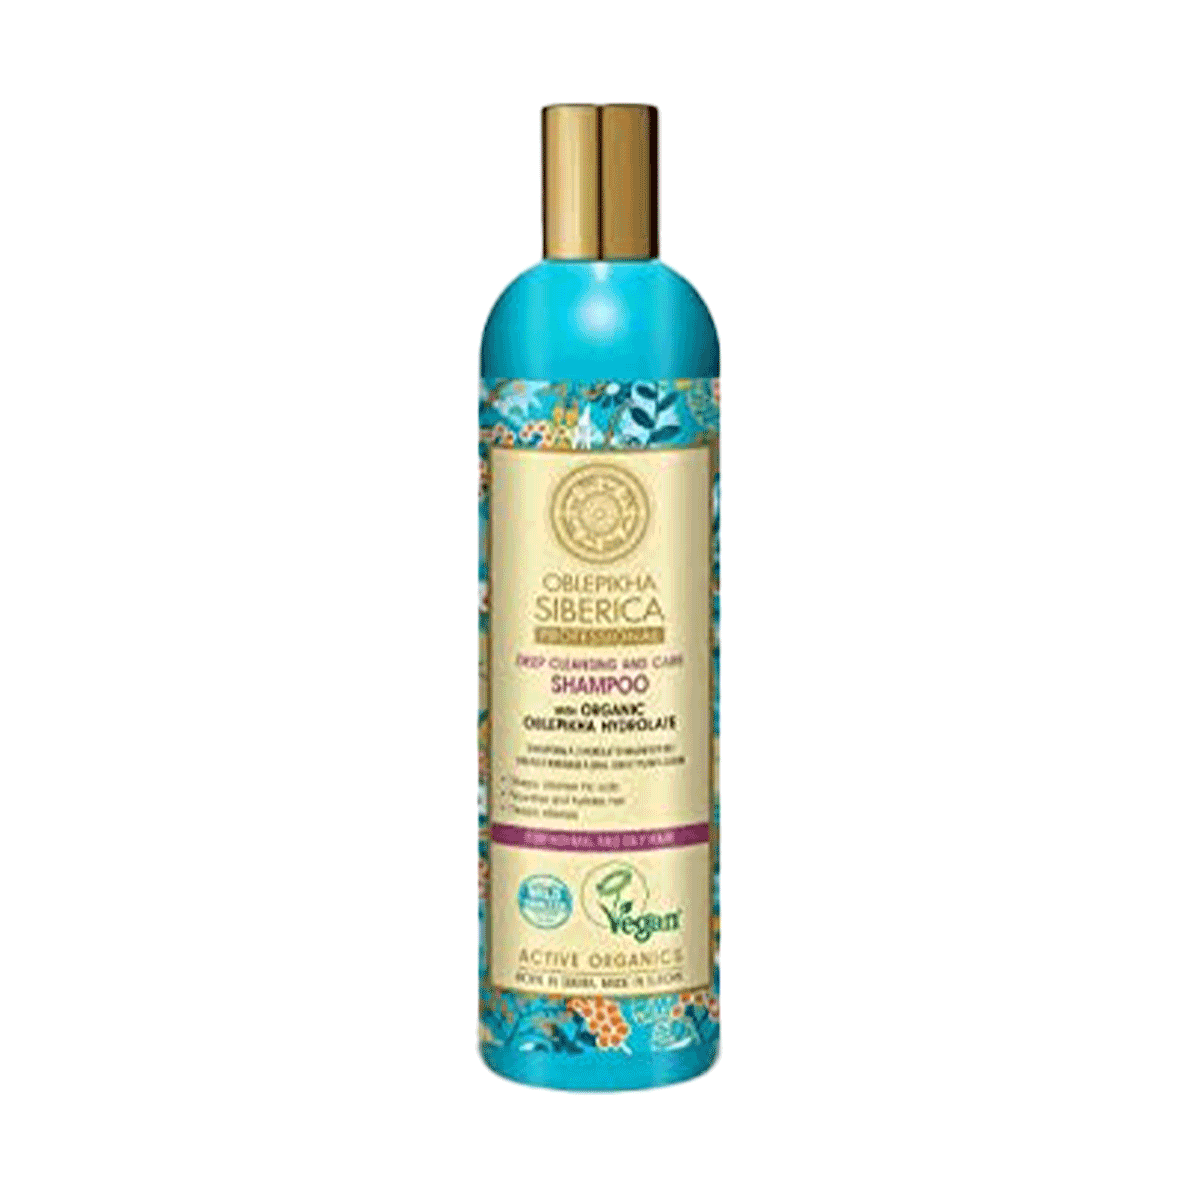 Shampoo Limpieza Profunda y Cuidados para cabello Normal y Graso Espino Amarillo Oblepikha Natura Siberica 400 ml 🍃 Producto Ecológico